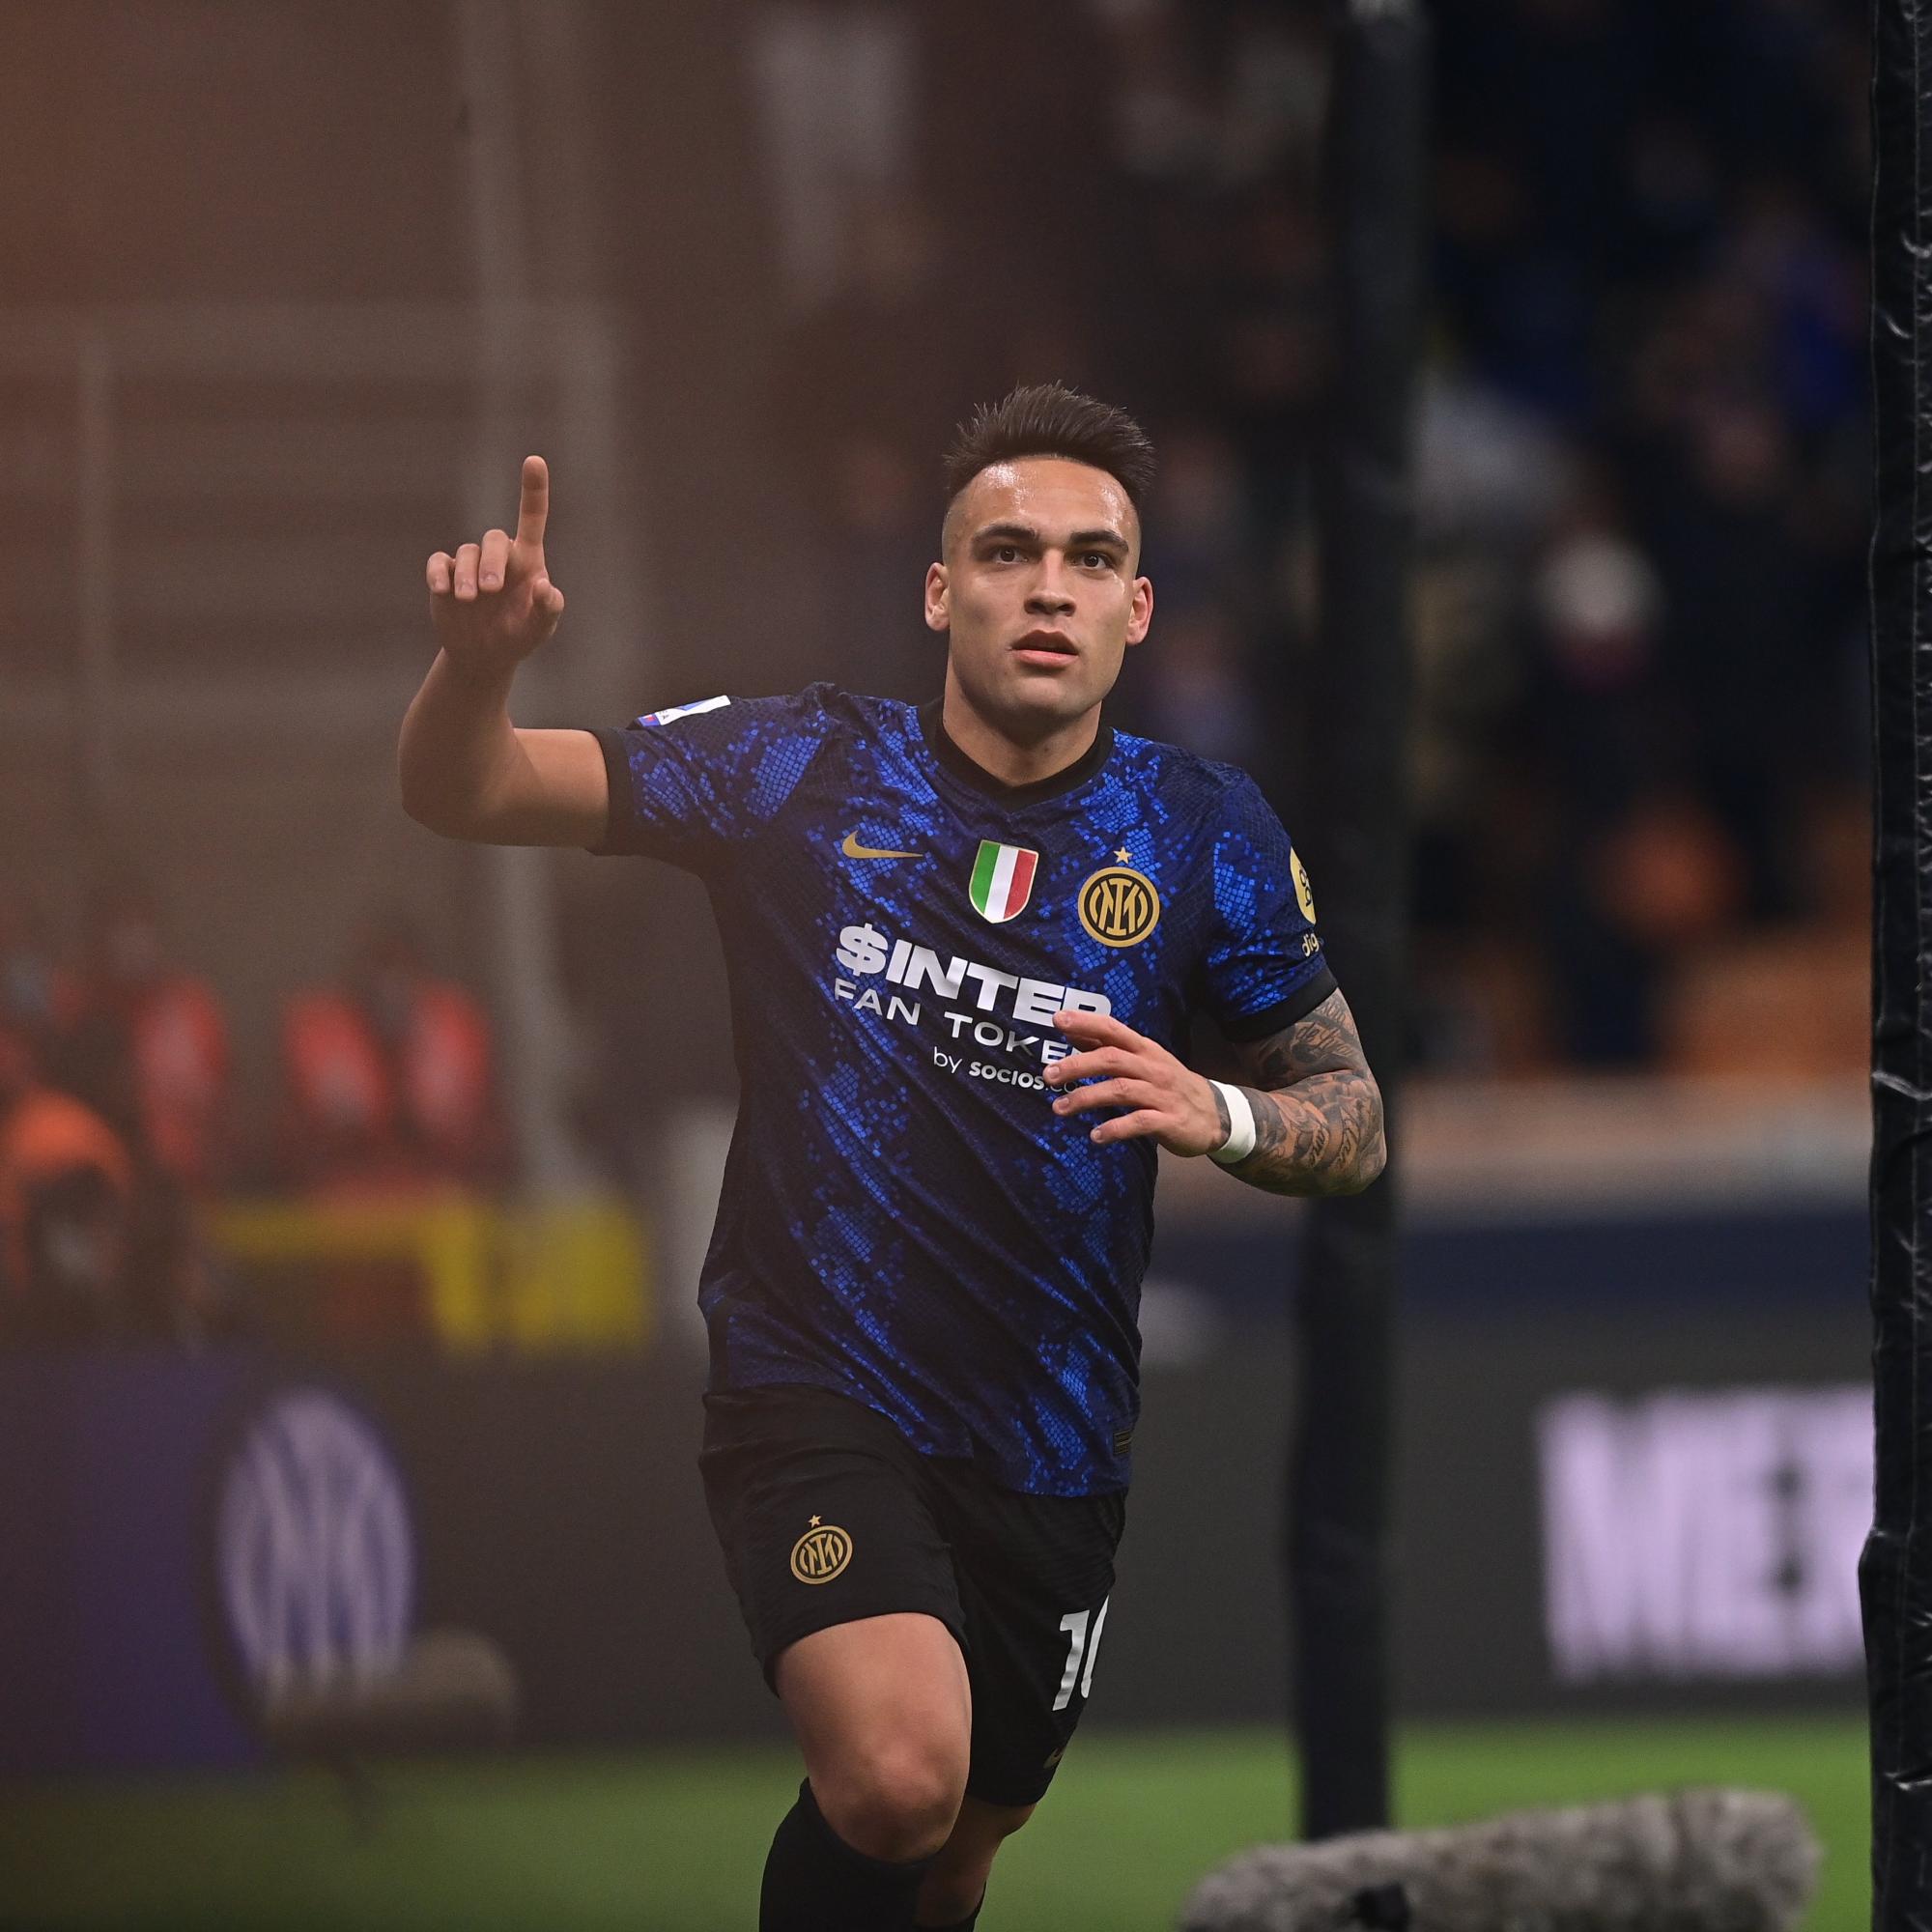 $!Inter vapulea al Cagliari y trepa a la cima de la Serie A